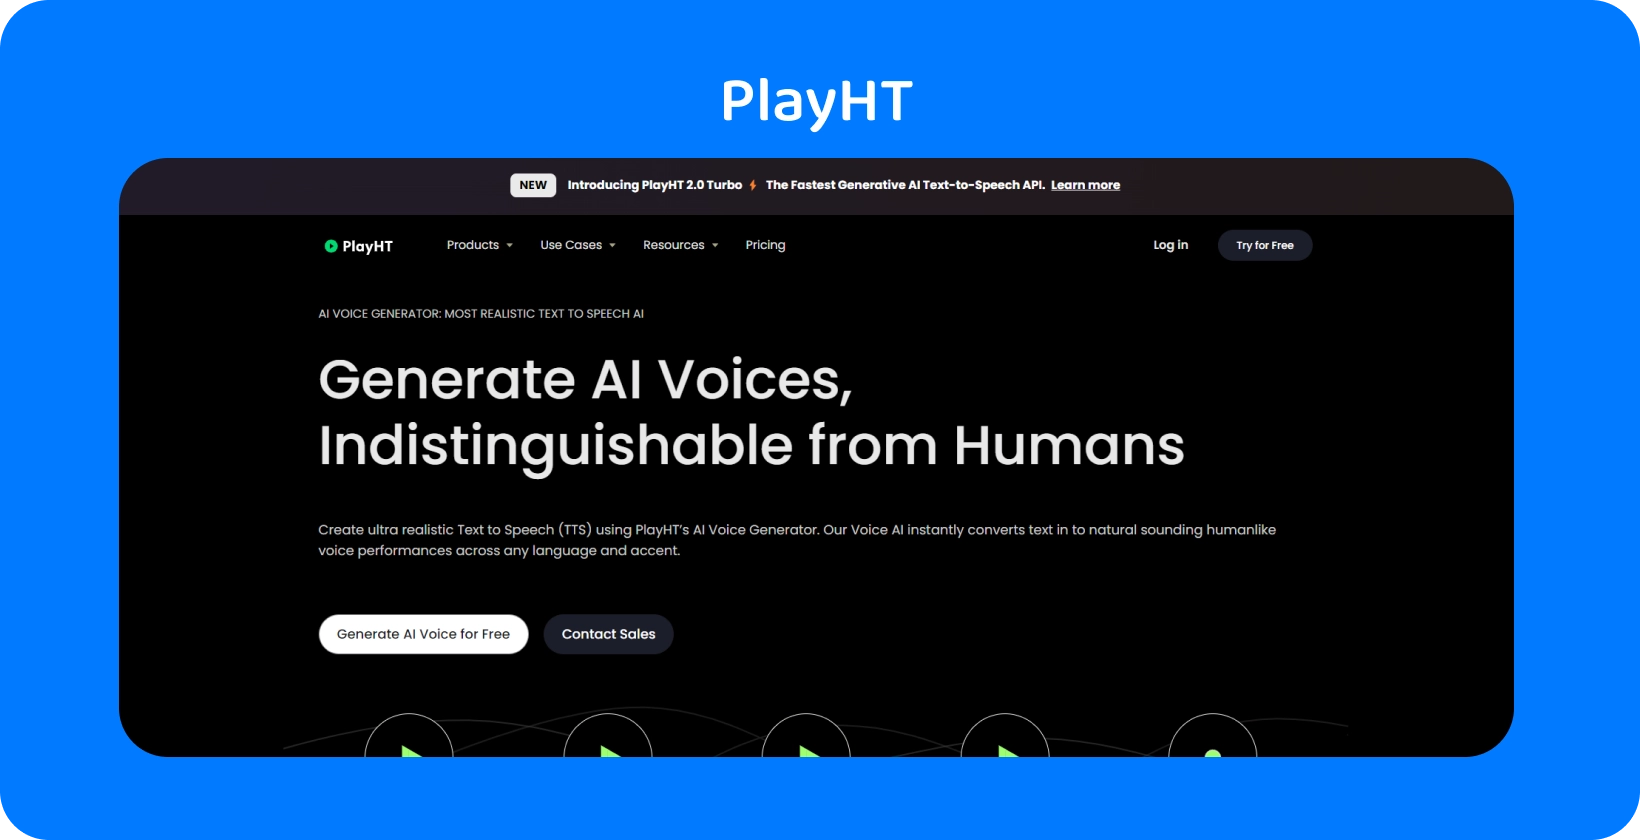 PlayHT oferuje głosy generowane przez AI prawie nie do odróżnienia od ludzkiej mowy na potrzeby zamiany tekstu na mowę.